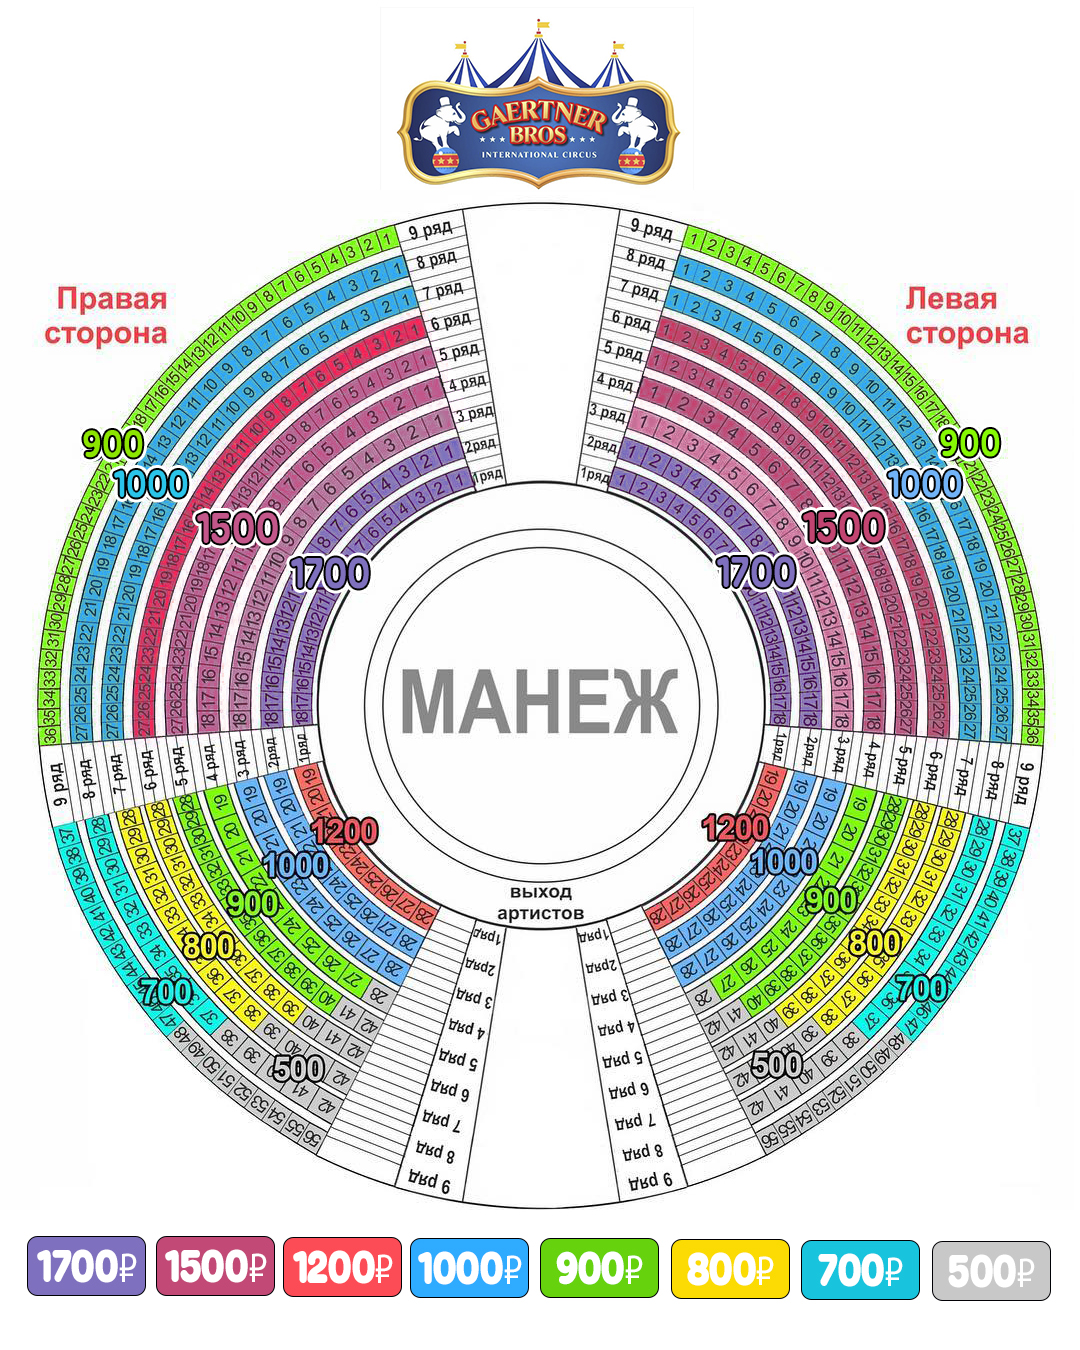 Схема зала цирка братьев Гертнер Альметьевск